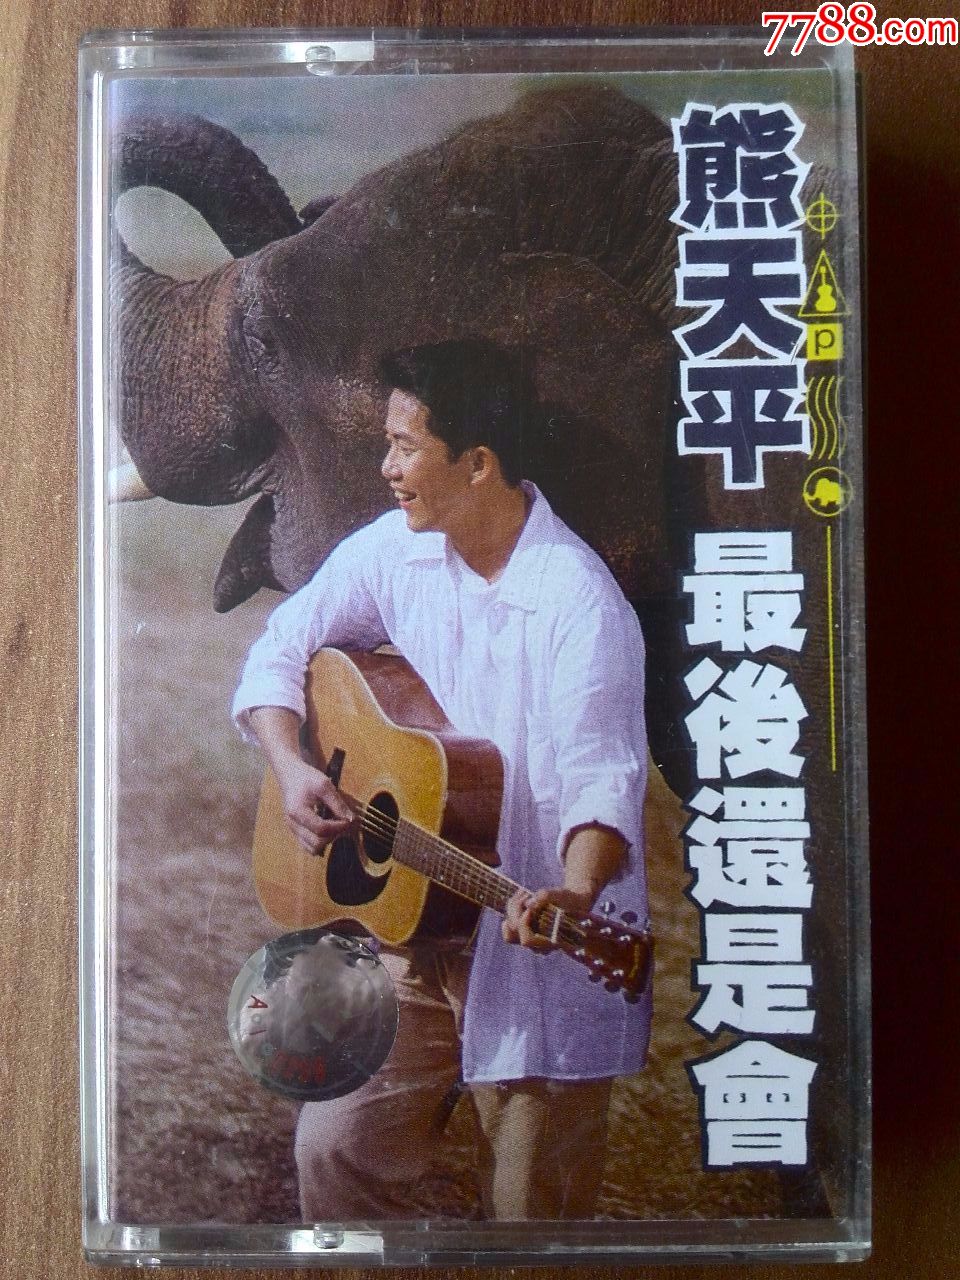 熊天平专辑封面图片